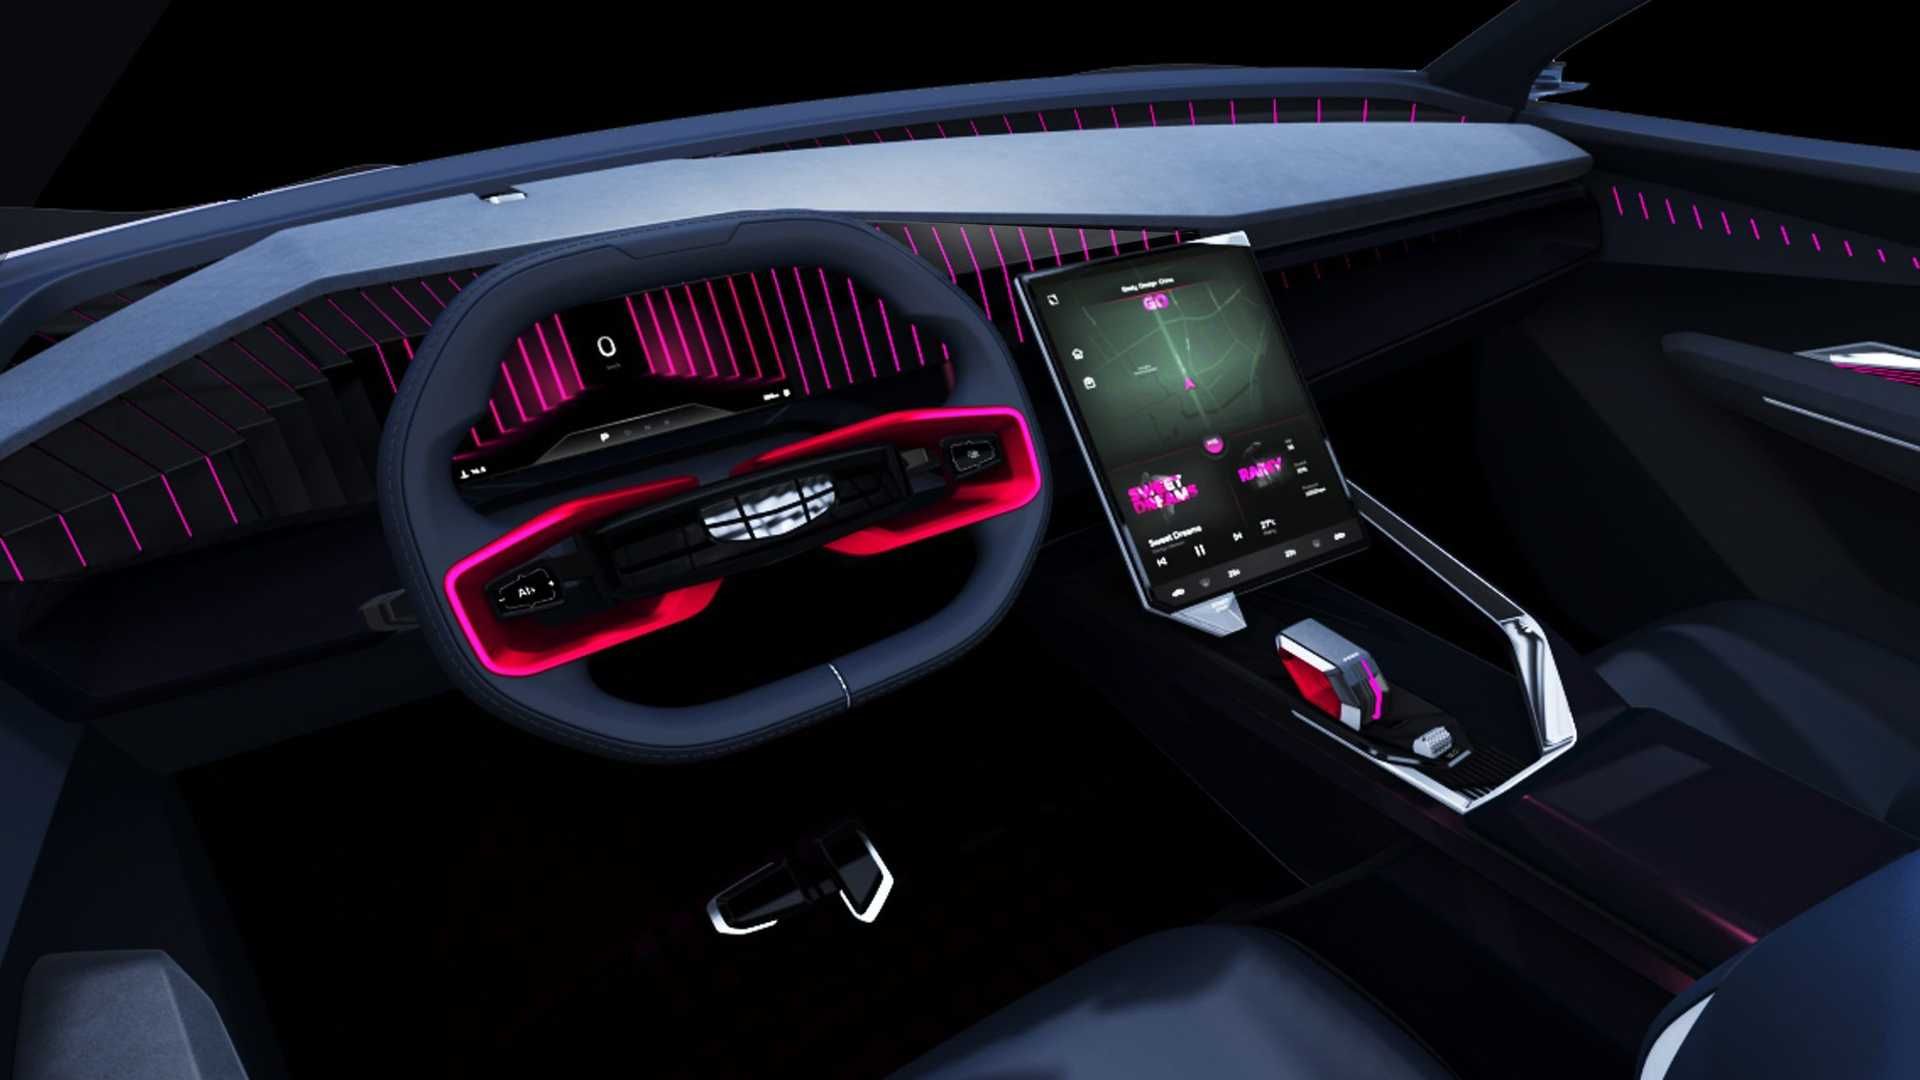 کابین و داشبورد خودروی مفهومی جیلی ویژن استاربرست / Geely Vision Starburst Concept